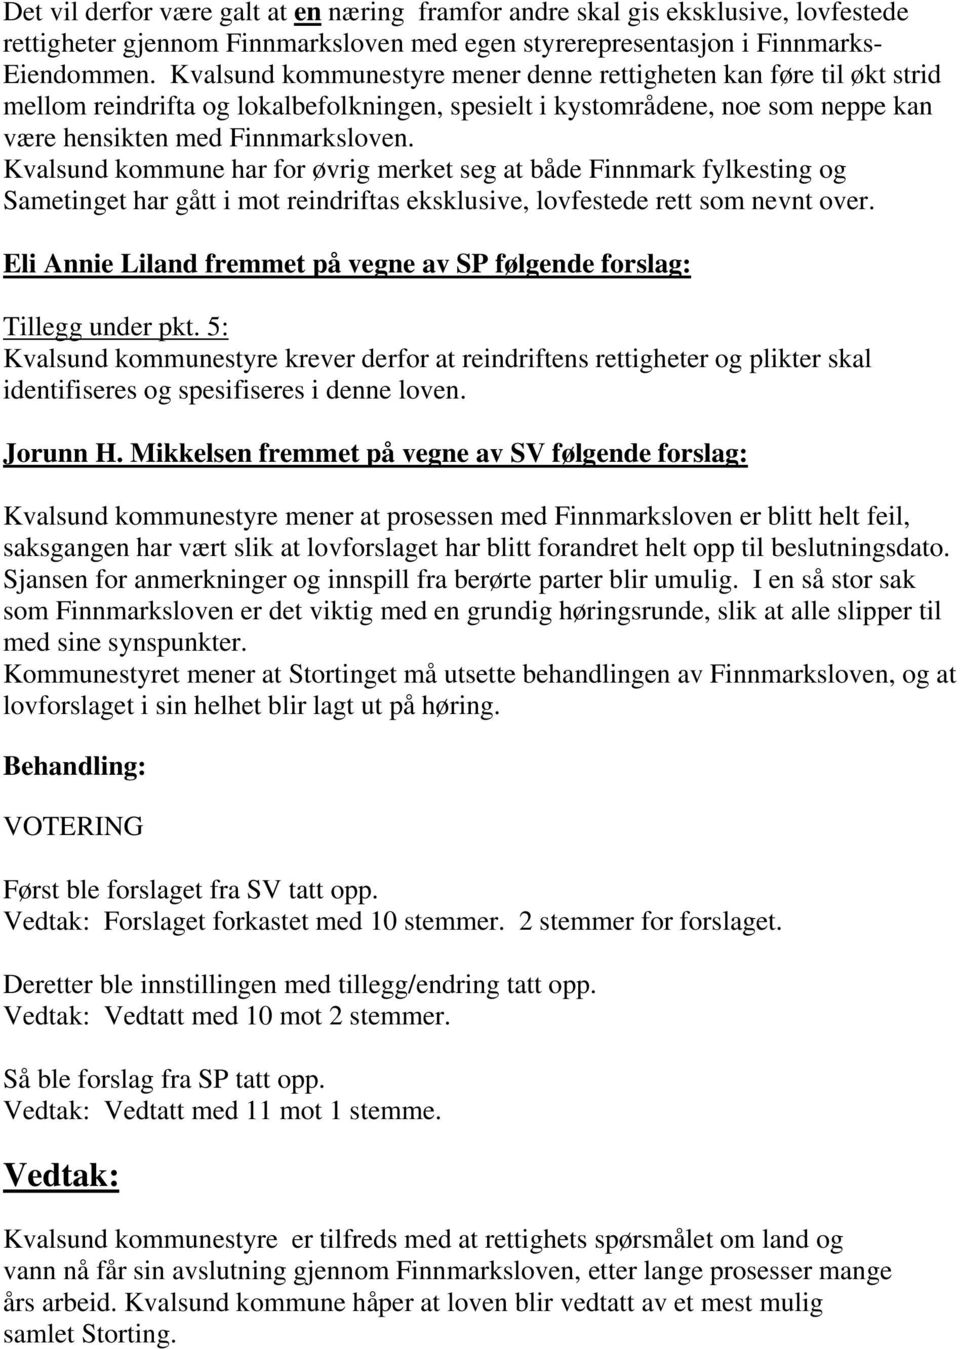 Kvalsund kommune har for øvrig merket seg at både Finnmark fylkesting og Sametinget har gått i mot reindriftas eksklusive, lovfestede rett som nevnt over.